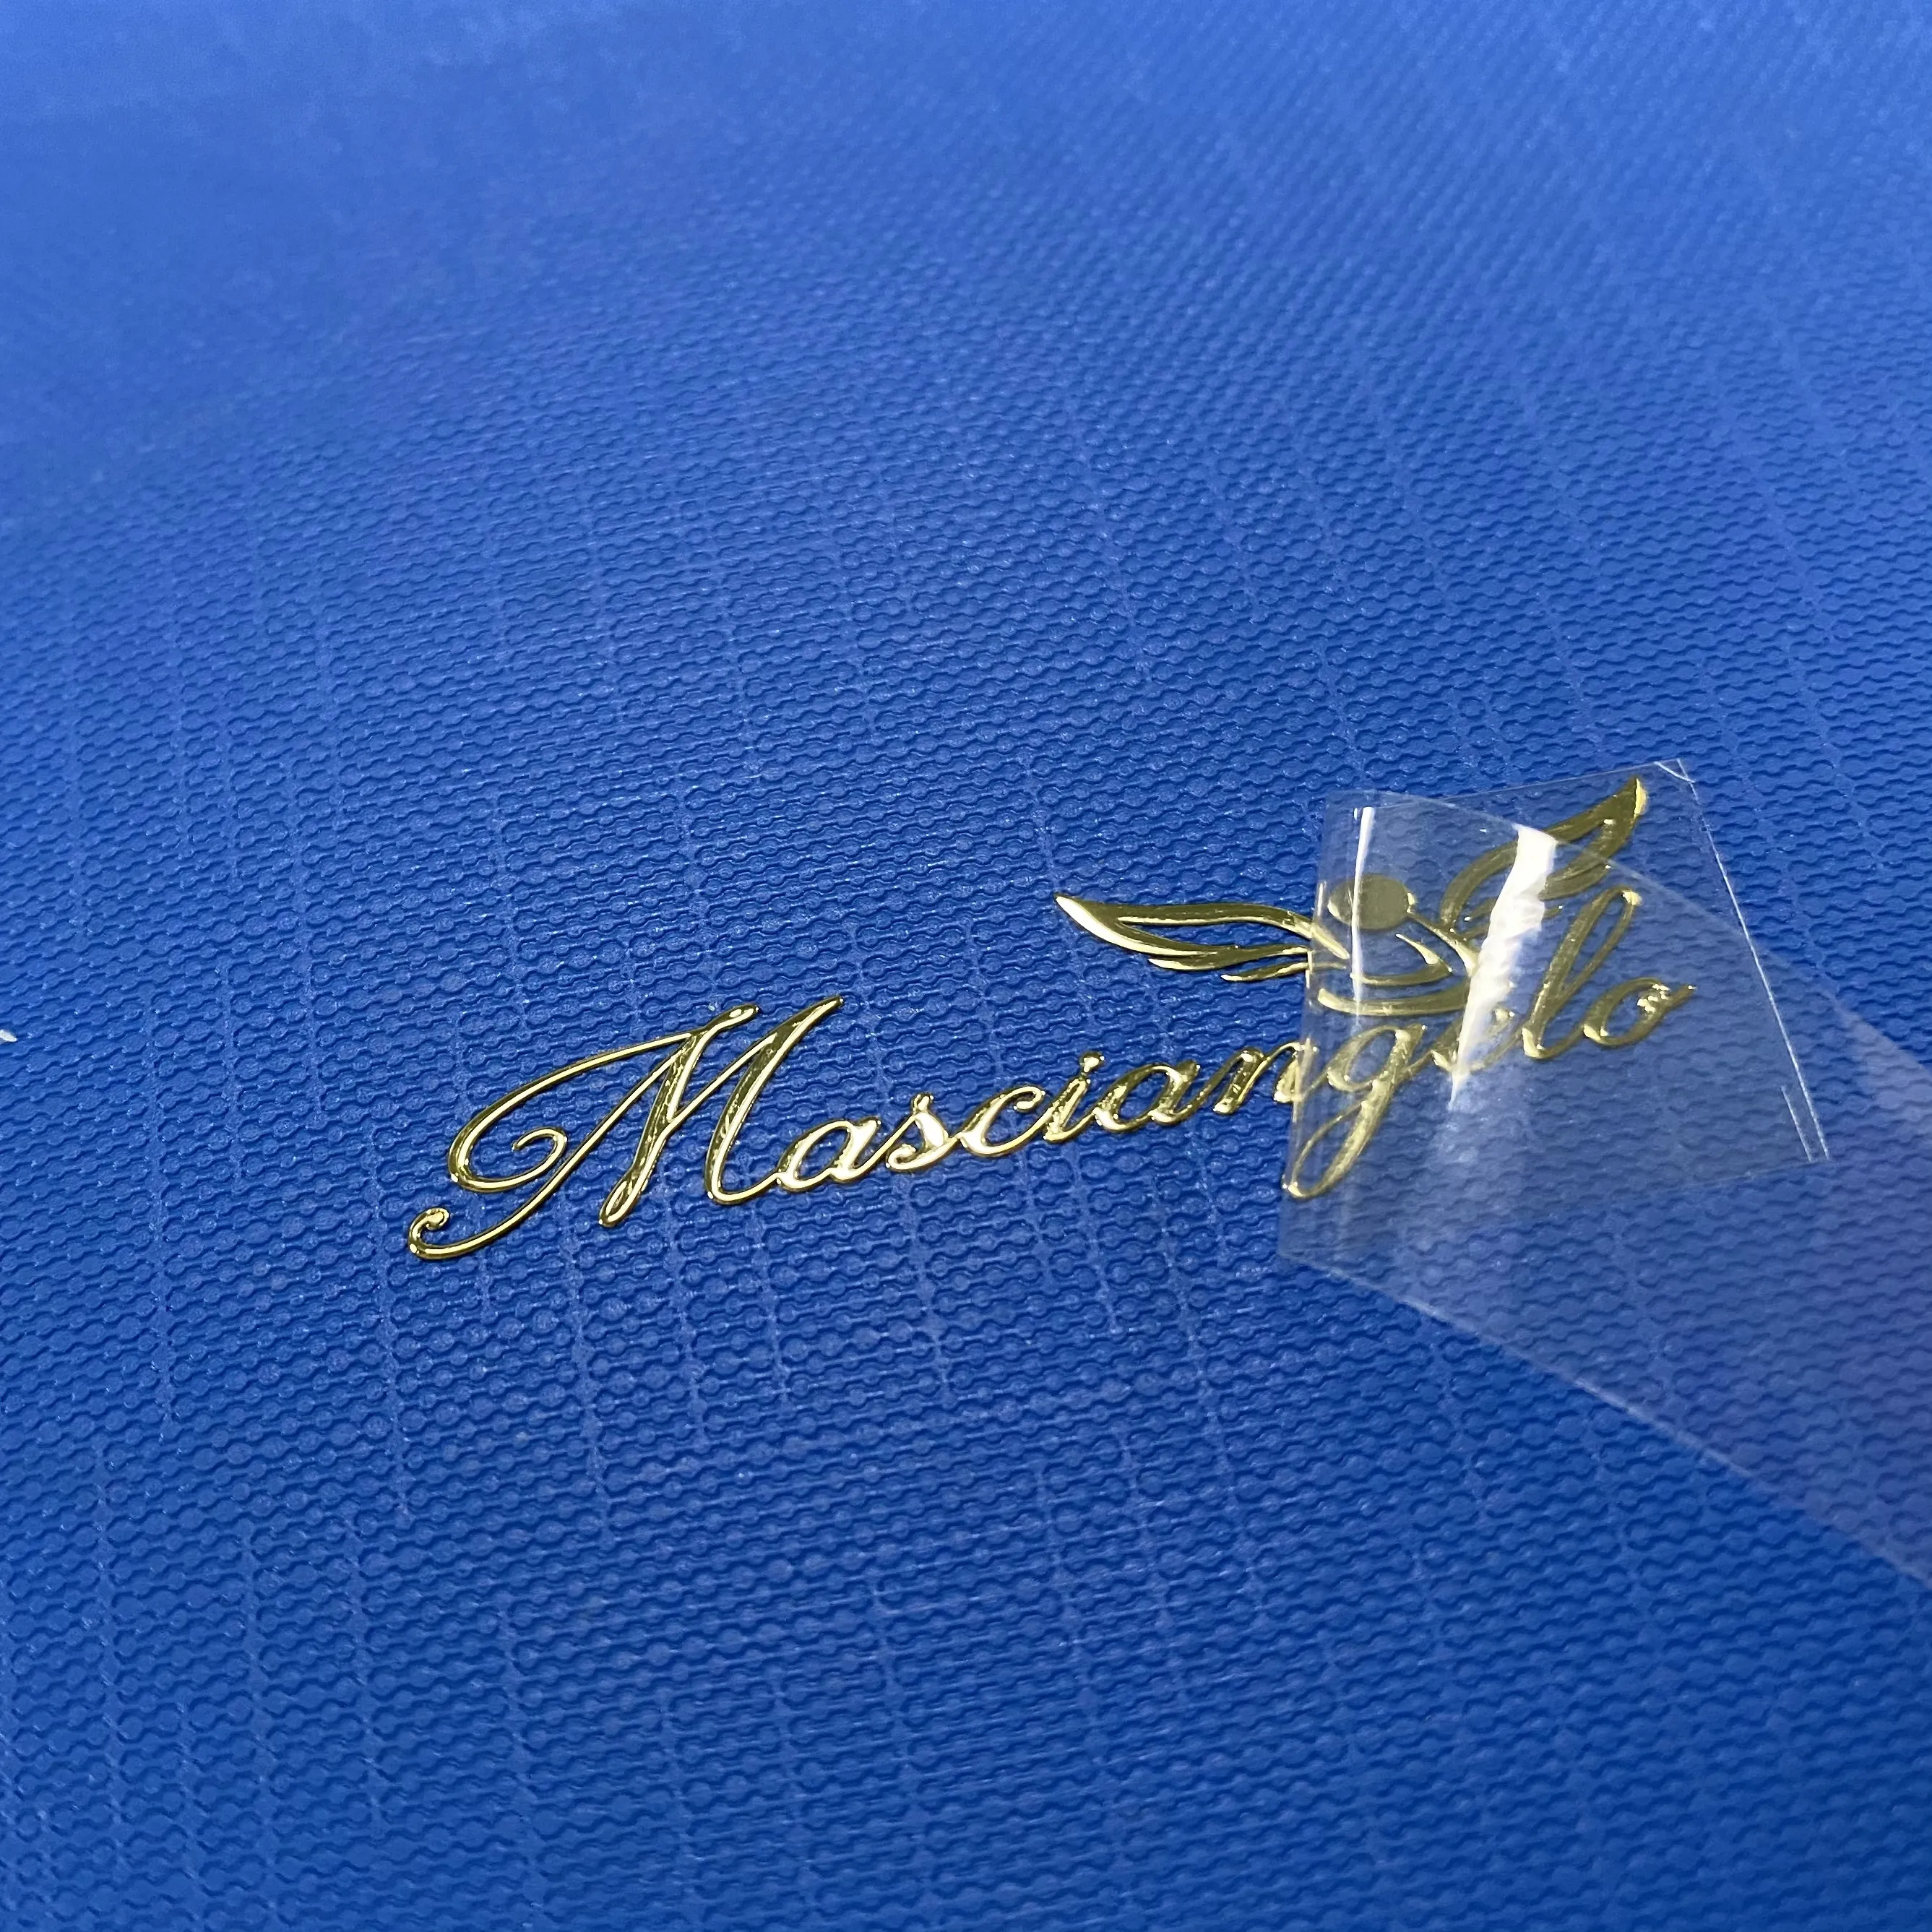 Etiqueta de níquel metálica colorida, etiqueta de níquel metálica impermeável com letra dourada, prata 3d de metal com adesivo de transferência